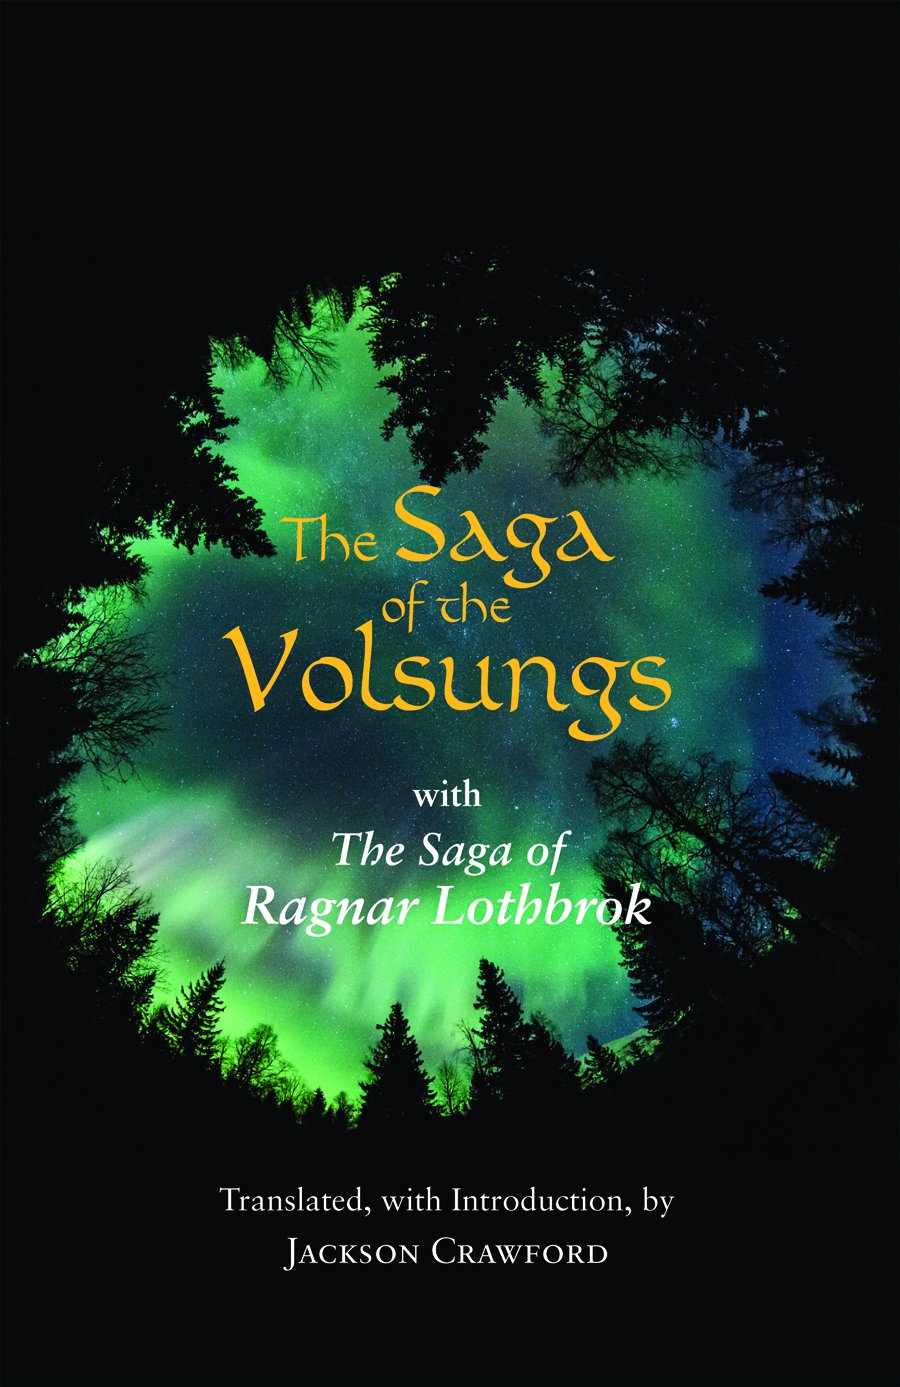 LIbri UK/US Crawford, Jackson - The Saga Of The Volsungs : With The Saga Of Ragnar Lothbrok NUOVO SIGILLATO, EDIZIONE DEL 31/01/2017 SUBITO DISPONIBILE